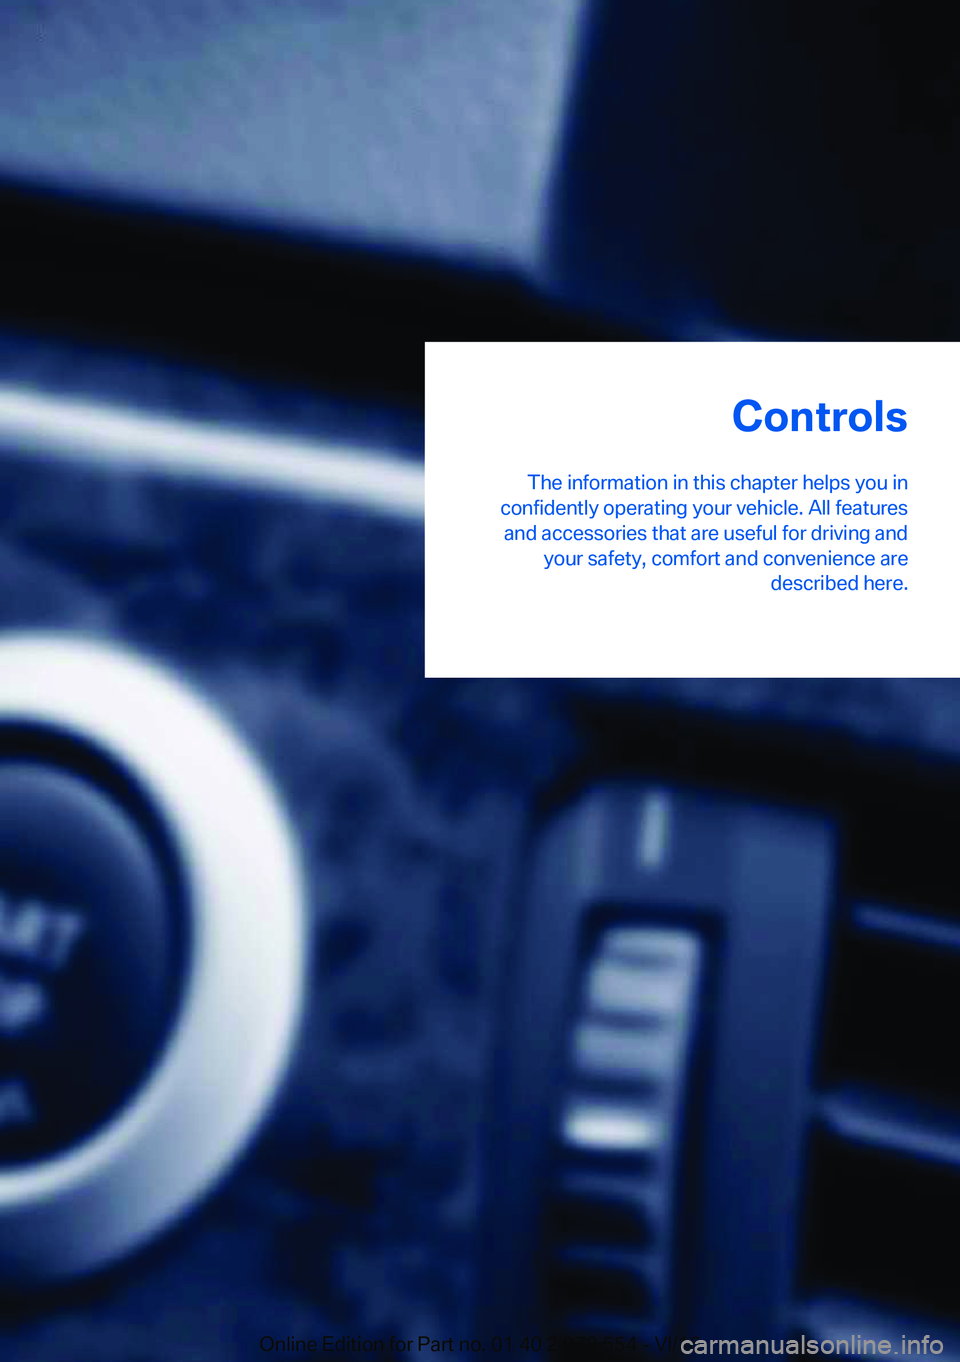 BMW 5 SERIES GRAN TURISMO 2017 Owners Guide �C�o�n�t�r�o�l�s
�T�h�e� �i�n�f�o�r�m�a�t�i�o�n� �i�n� �t�h�i�s� �c�h�a�p�t�e�r� �h�e�l�p�s� �y�o�u� �i�n
�c�o�n�f�i�d�e�n�t�l�y� �o�p�e�r�a�t�i�n�g� �y�o�u�r� �v�e�h�i�c�l�e�.� �A�l�l� �f�e�a�t�u�r�e